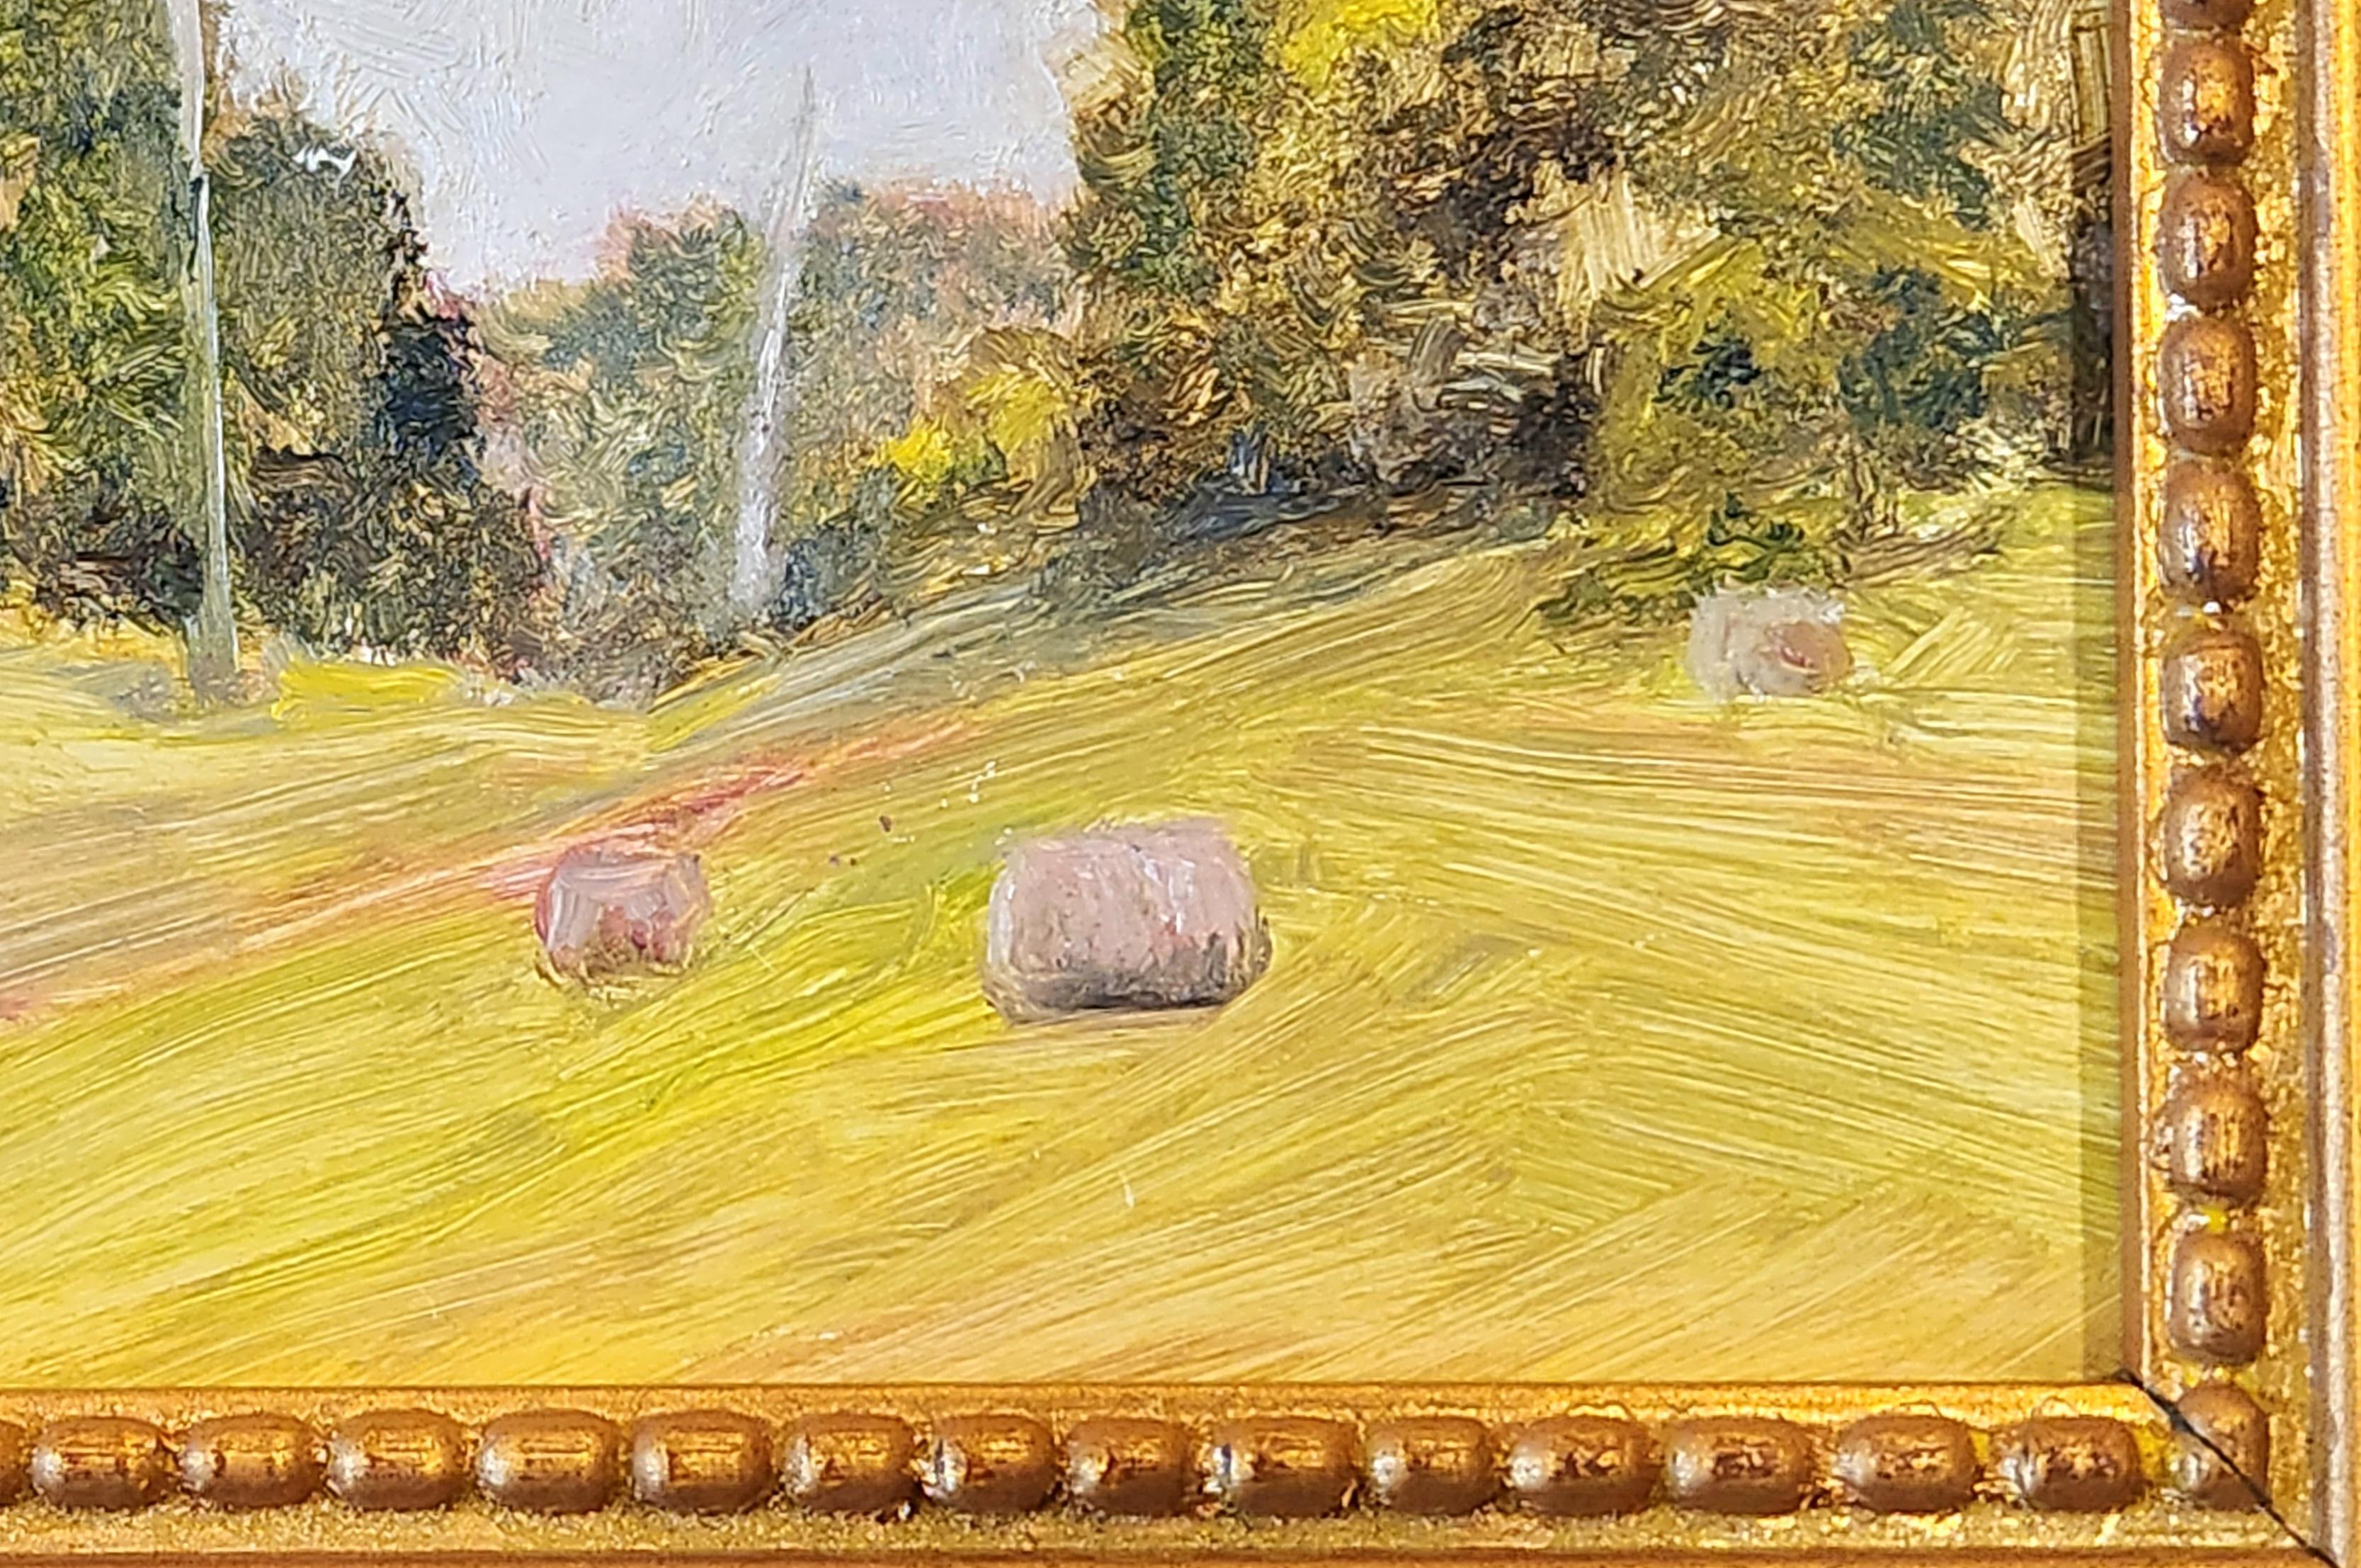 Dieses Gemälde in Öl auf Leinwand zeigt eine schöne Szene mit Heuballen in einer hügeligen Landschaft. Das Grün und das helle Gelb des sonnenbeschienenen Grases heben die Szene vom hellblauen Himmel ab. Heuballen und Telefonmasten lockern die